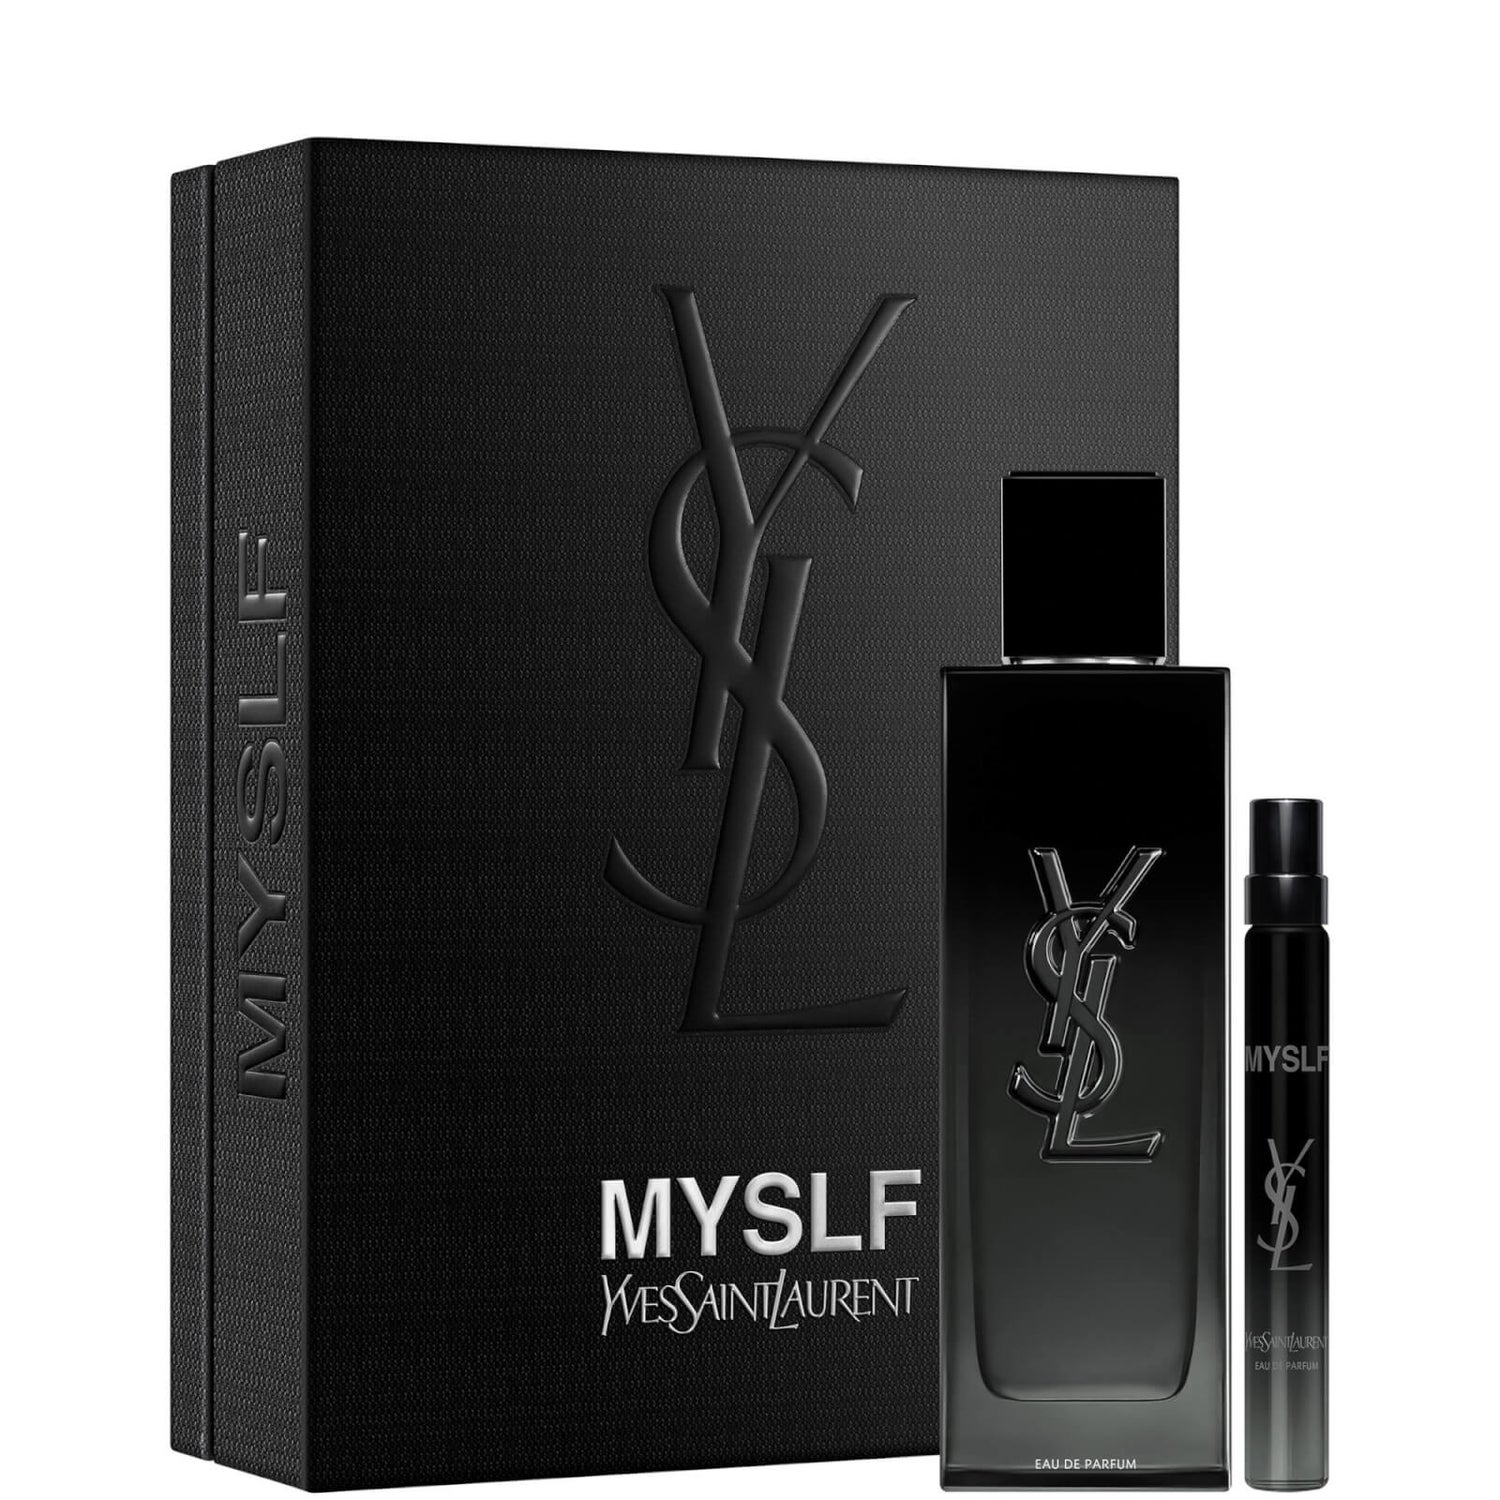 Yves Saint Laurent MYSLF 100ml Eau de Toilette and 10ml Trial Size Gift Set (Worth £104.50)